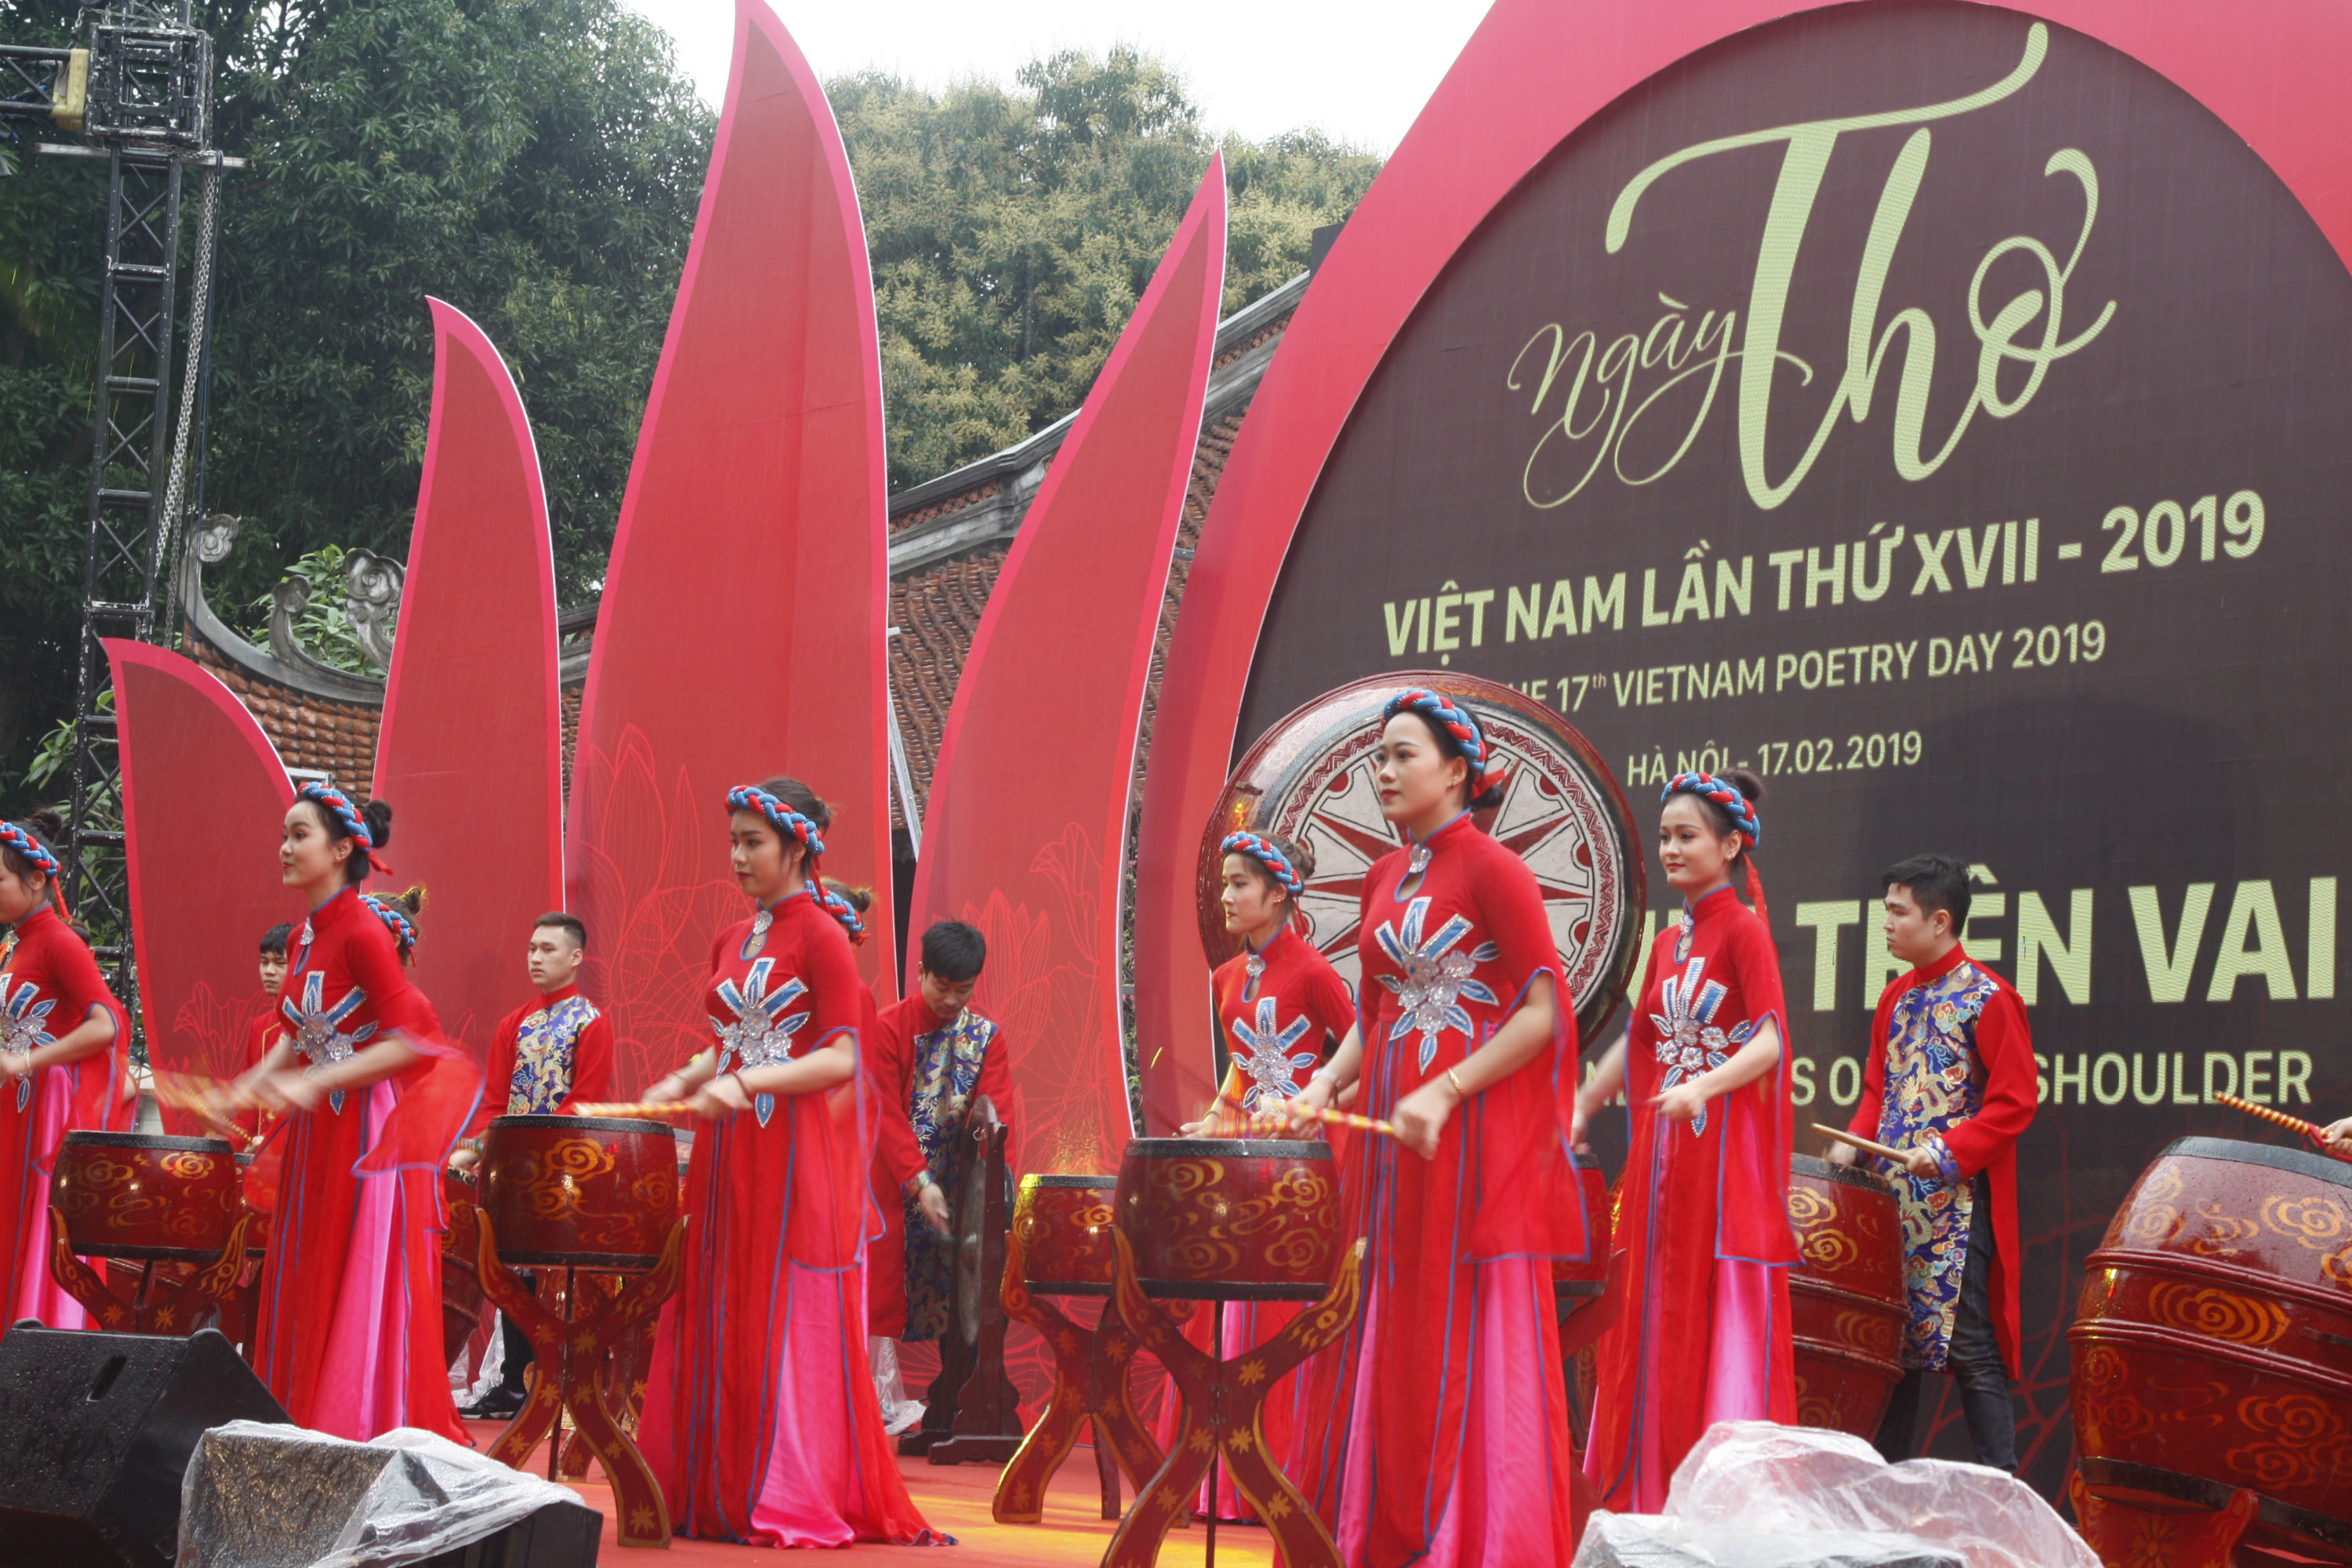 Chủ đề của Ngày Thơ Việt Nam 2019 được tổ chức tại Văn Miếu – Quốc Tử Giám là “Sông núi trên vai” hướng về biên giới tổ quốc. 